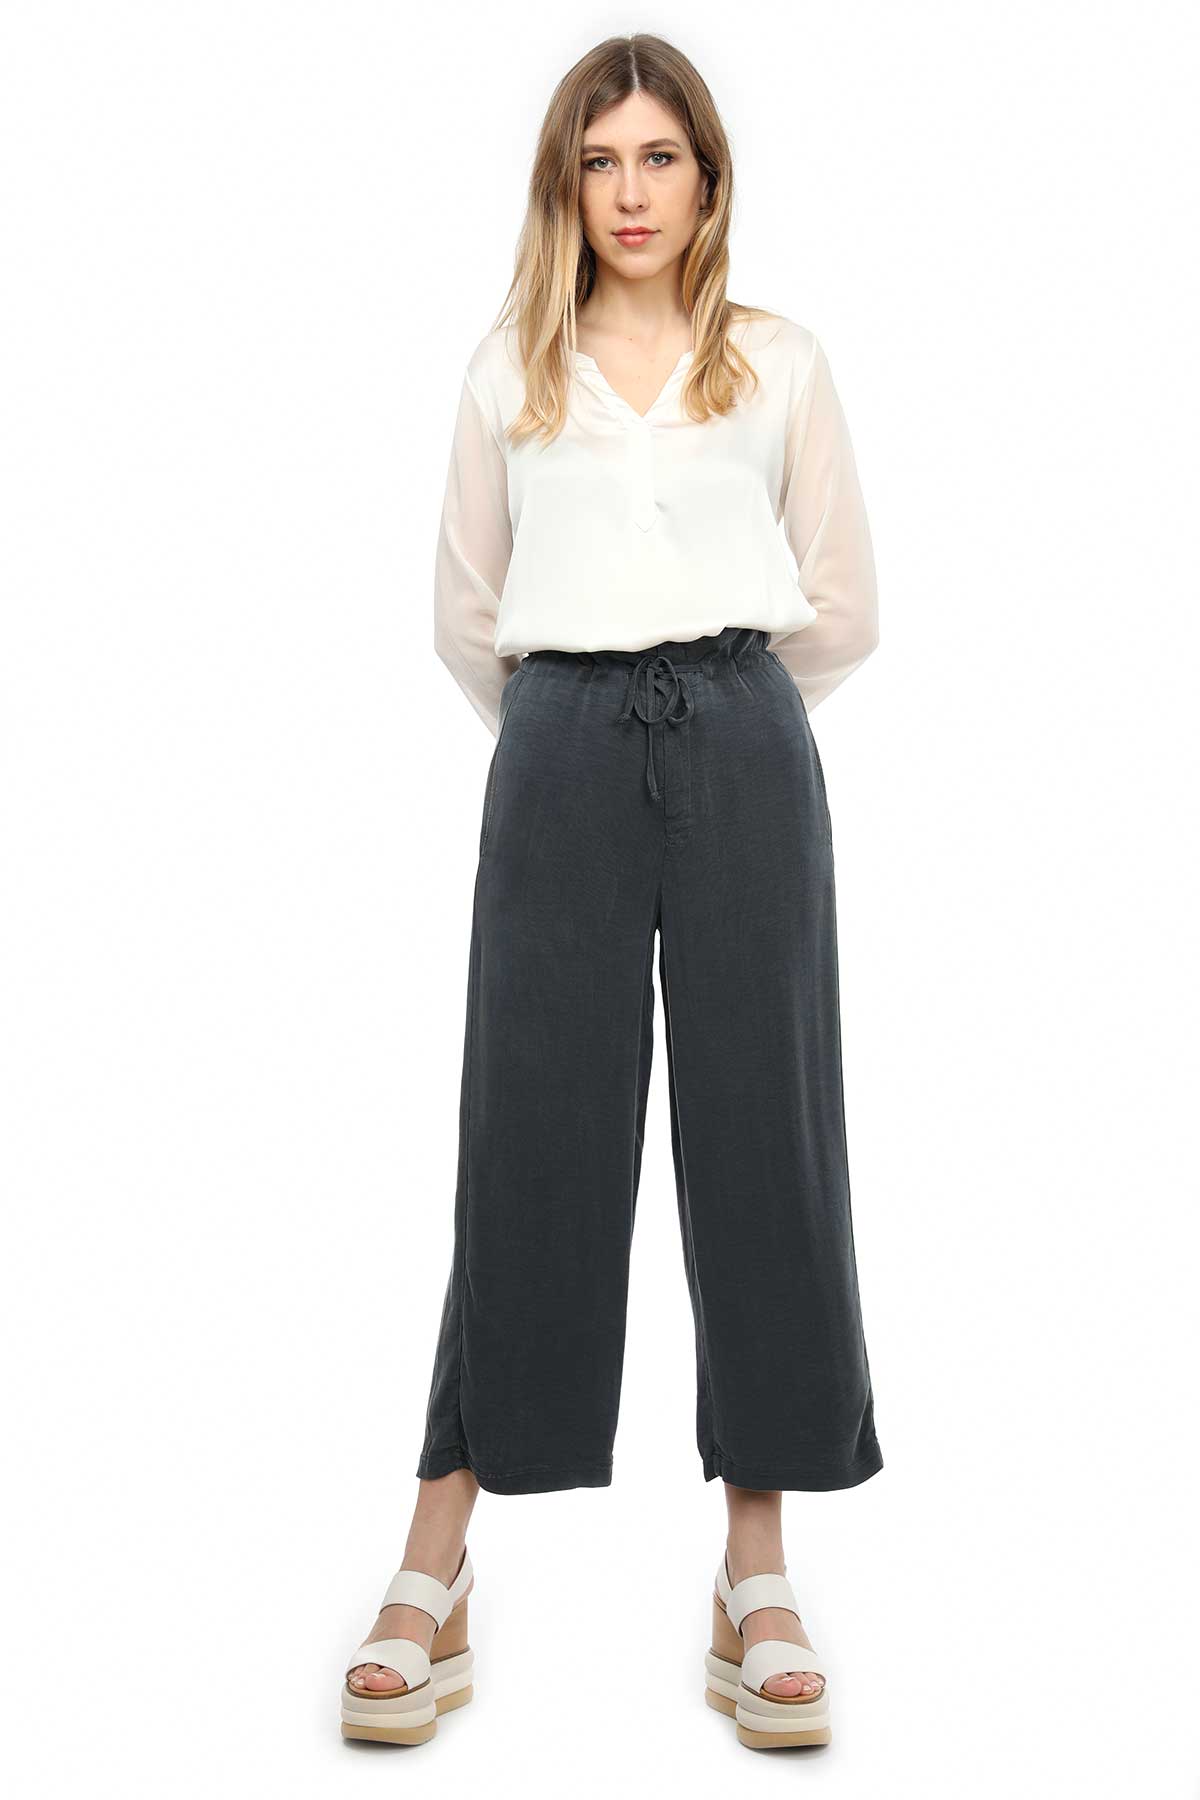 Transit Tencel™ Pantolon-Libas Trendy Fashion Store